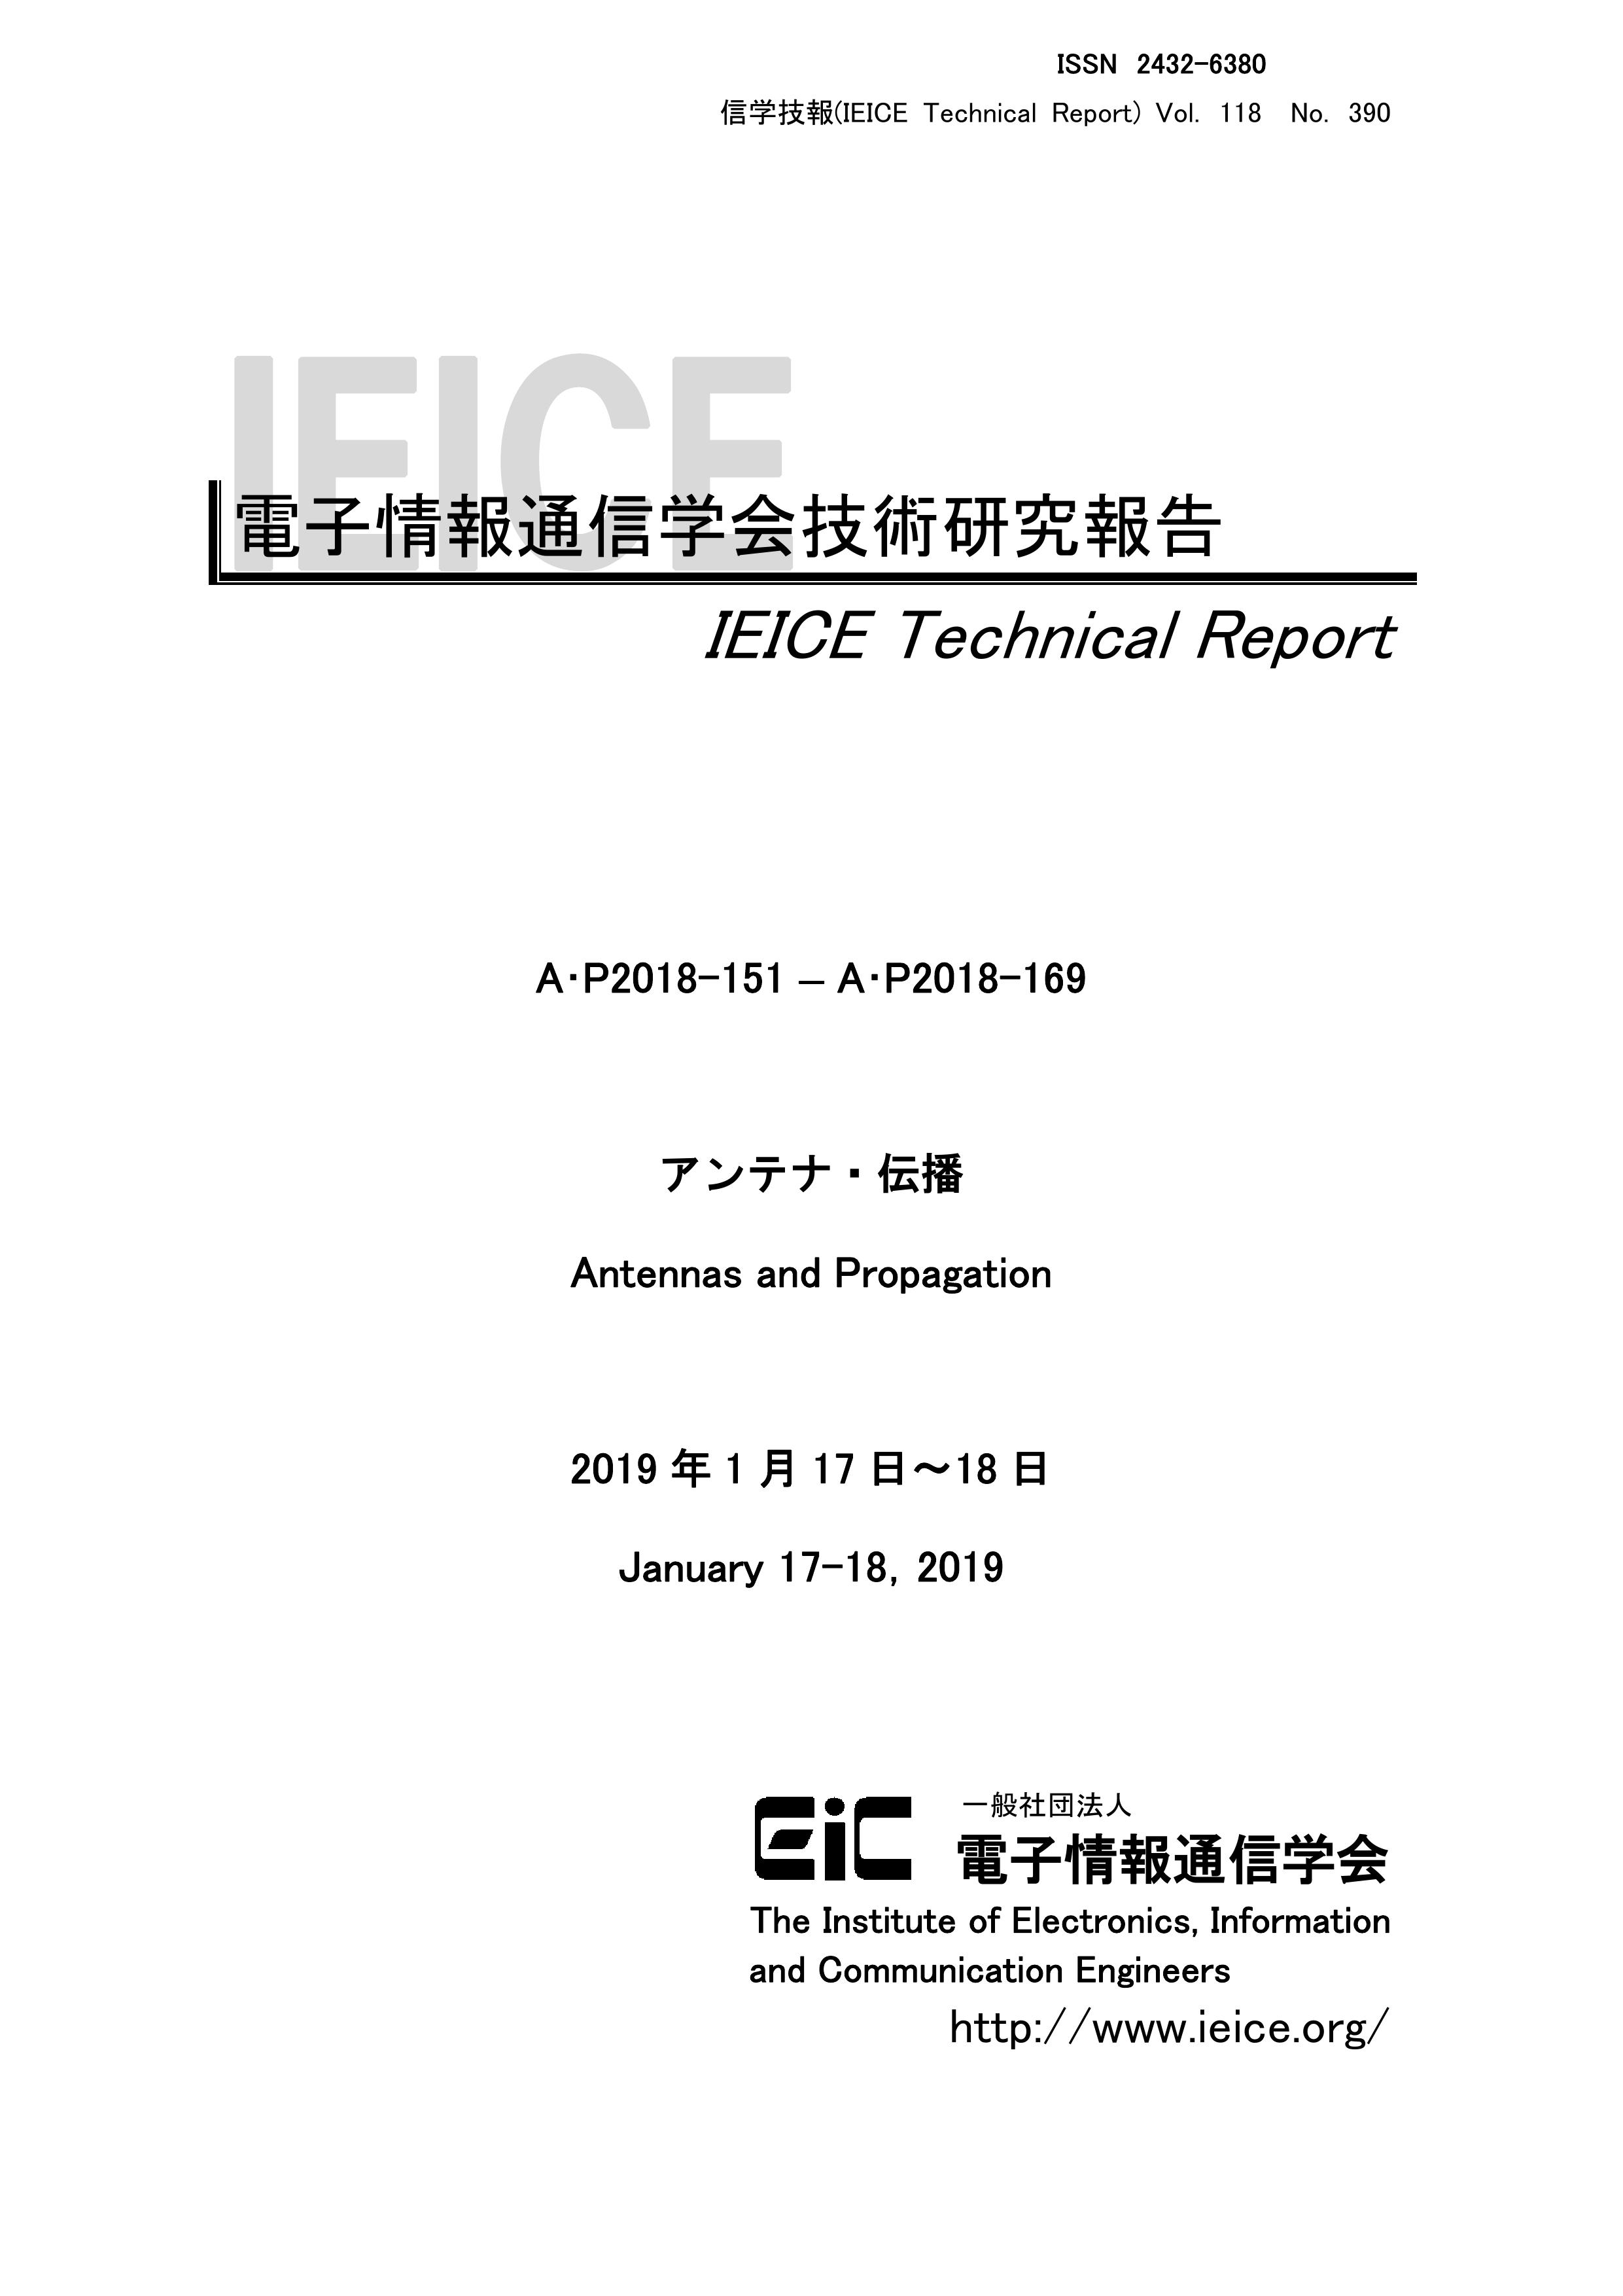 電子情報通信学会技術研究報告, vol 118, no 390, 2019